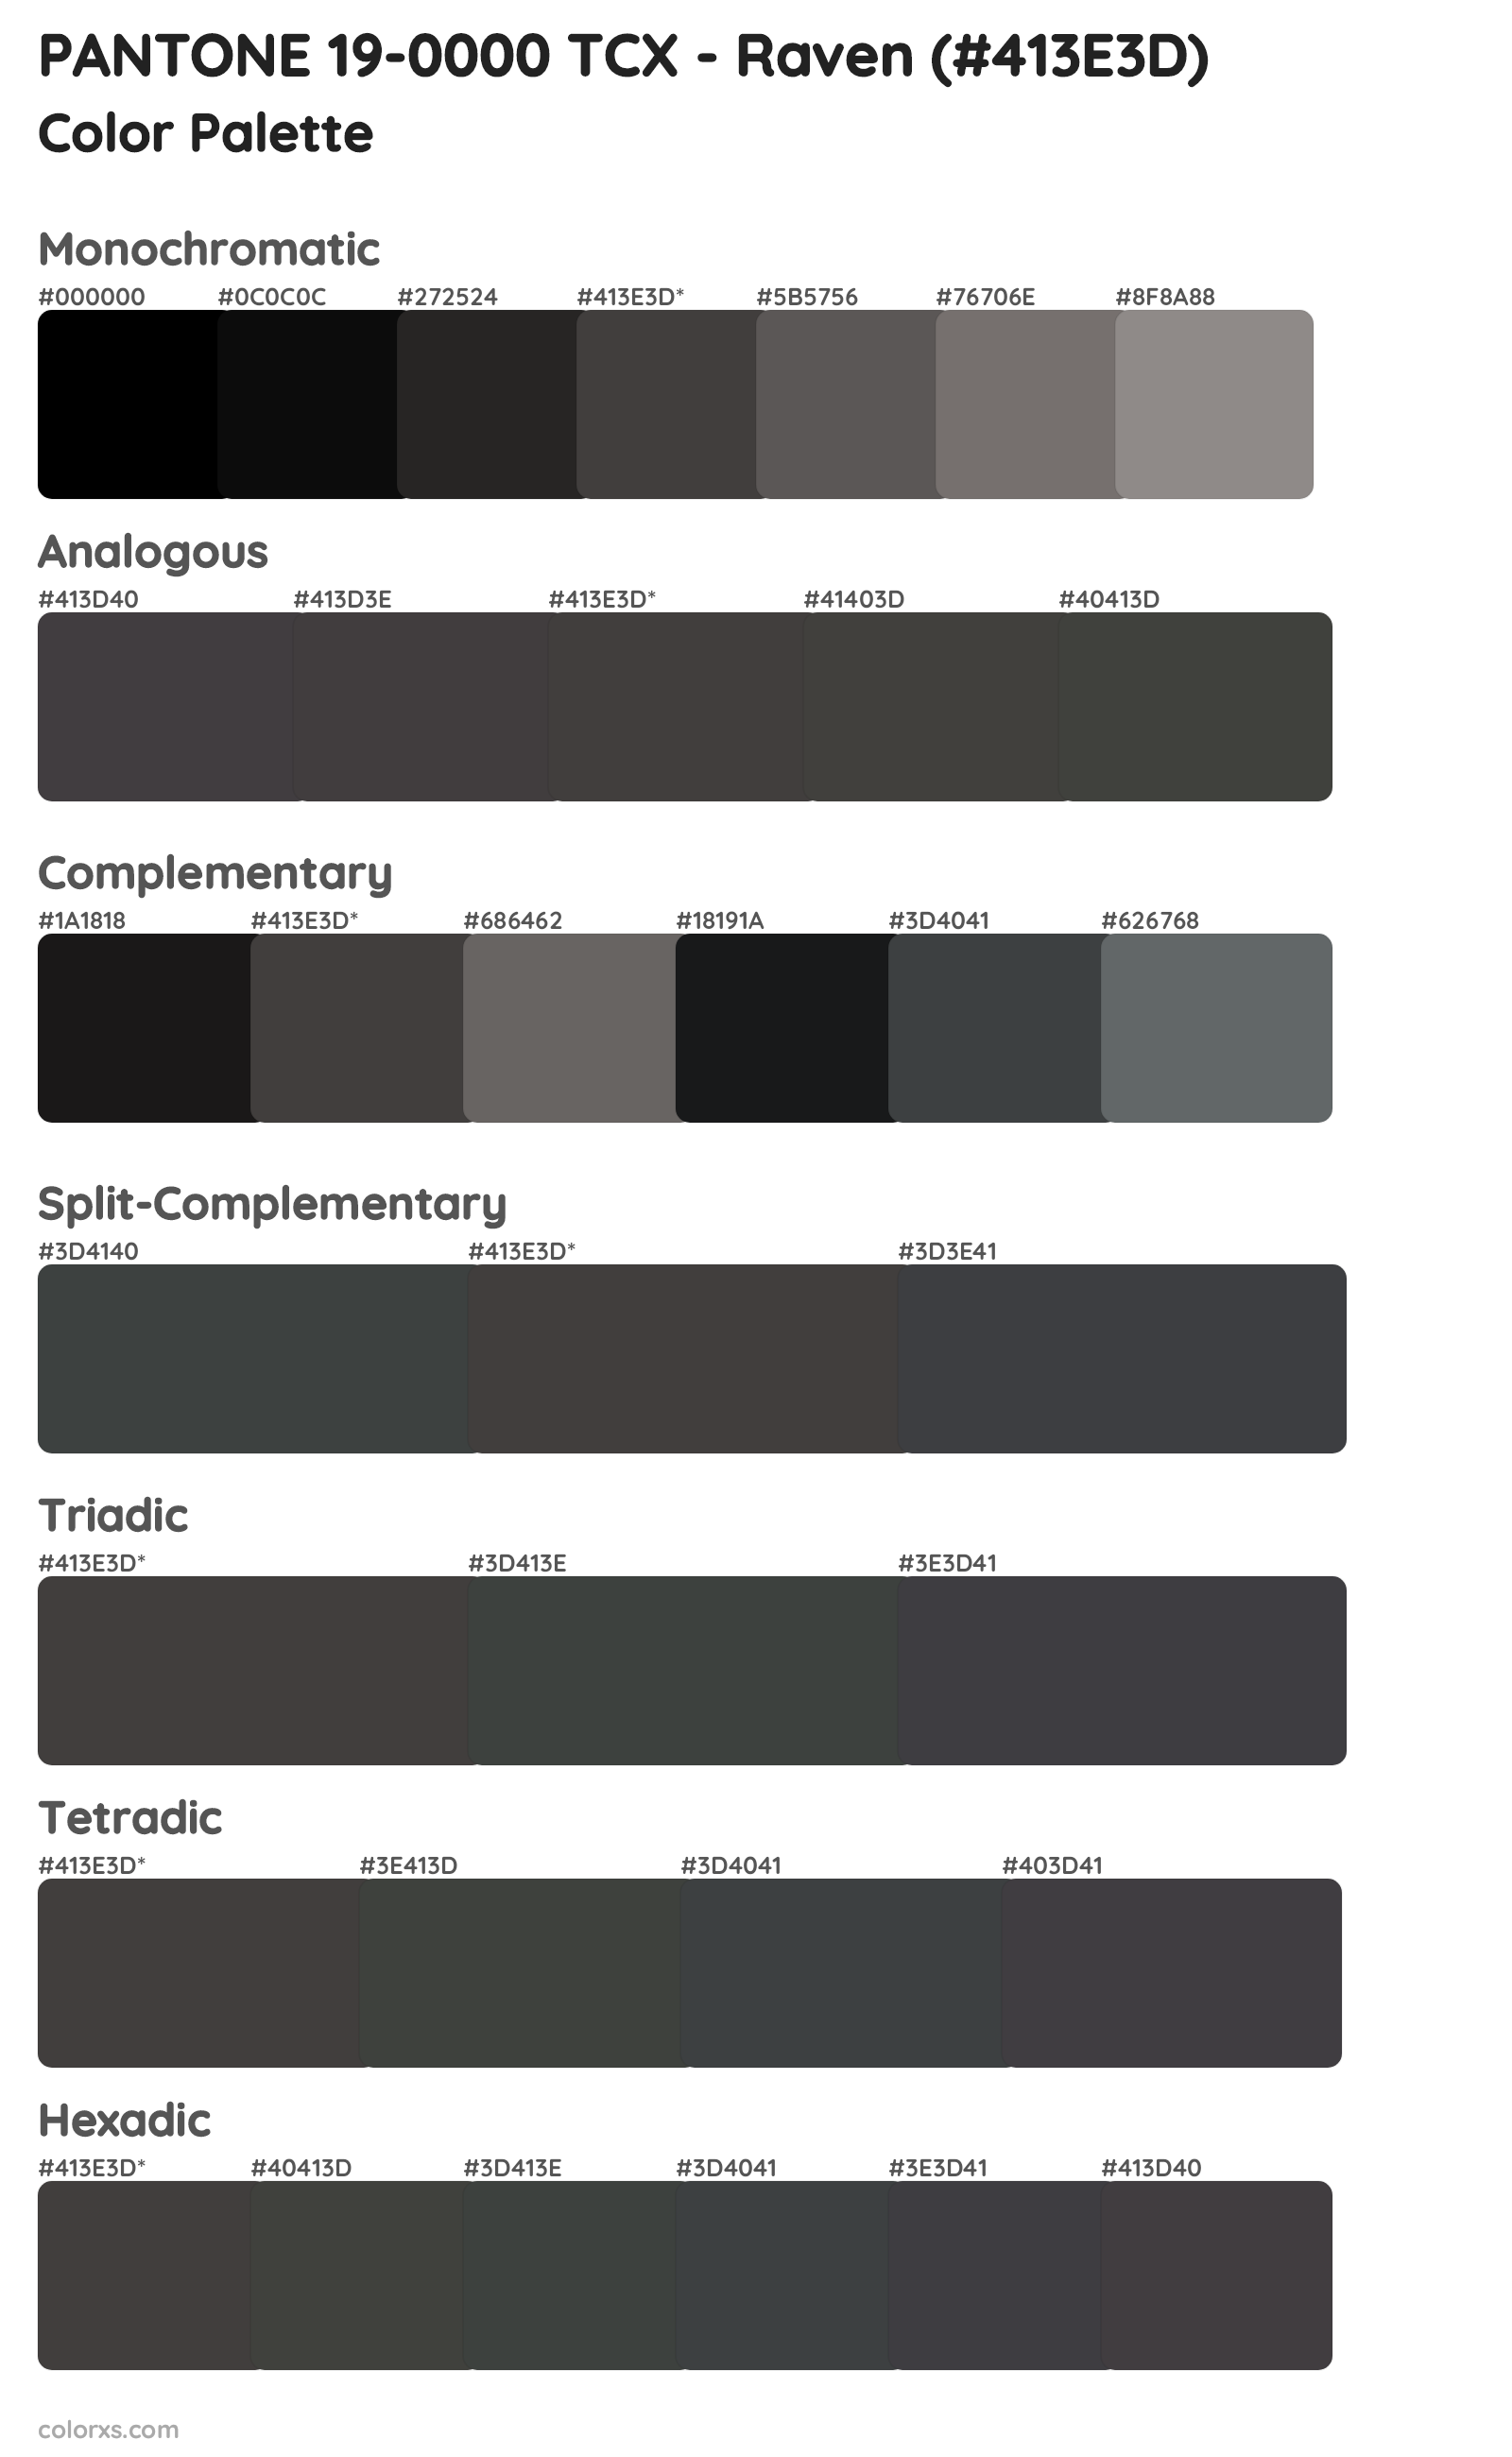 PANTONE 19-0000 TCX - Raven Color Scheme Palettes